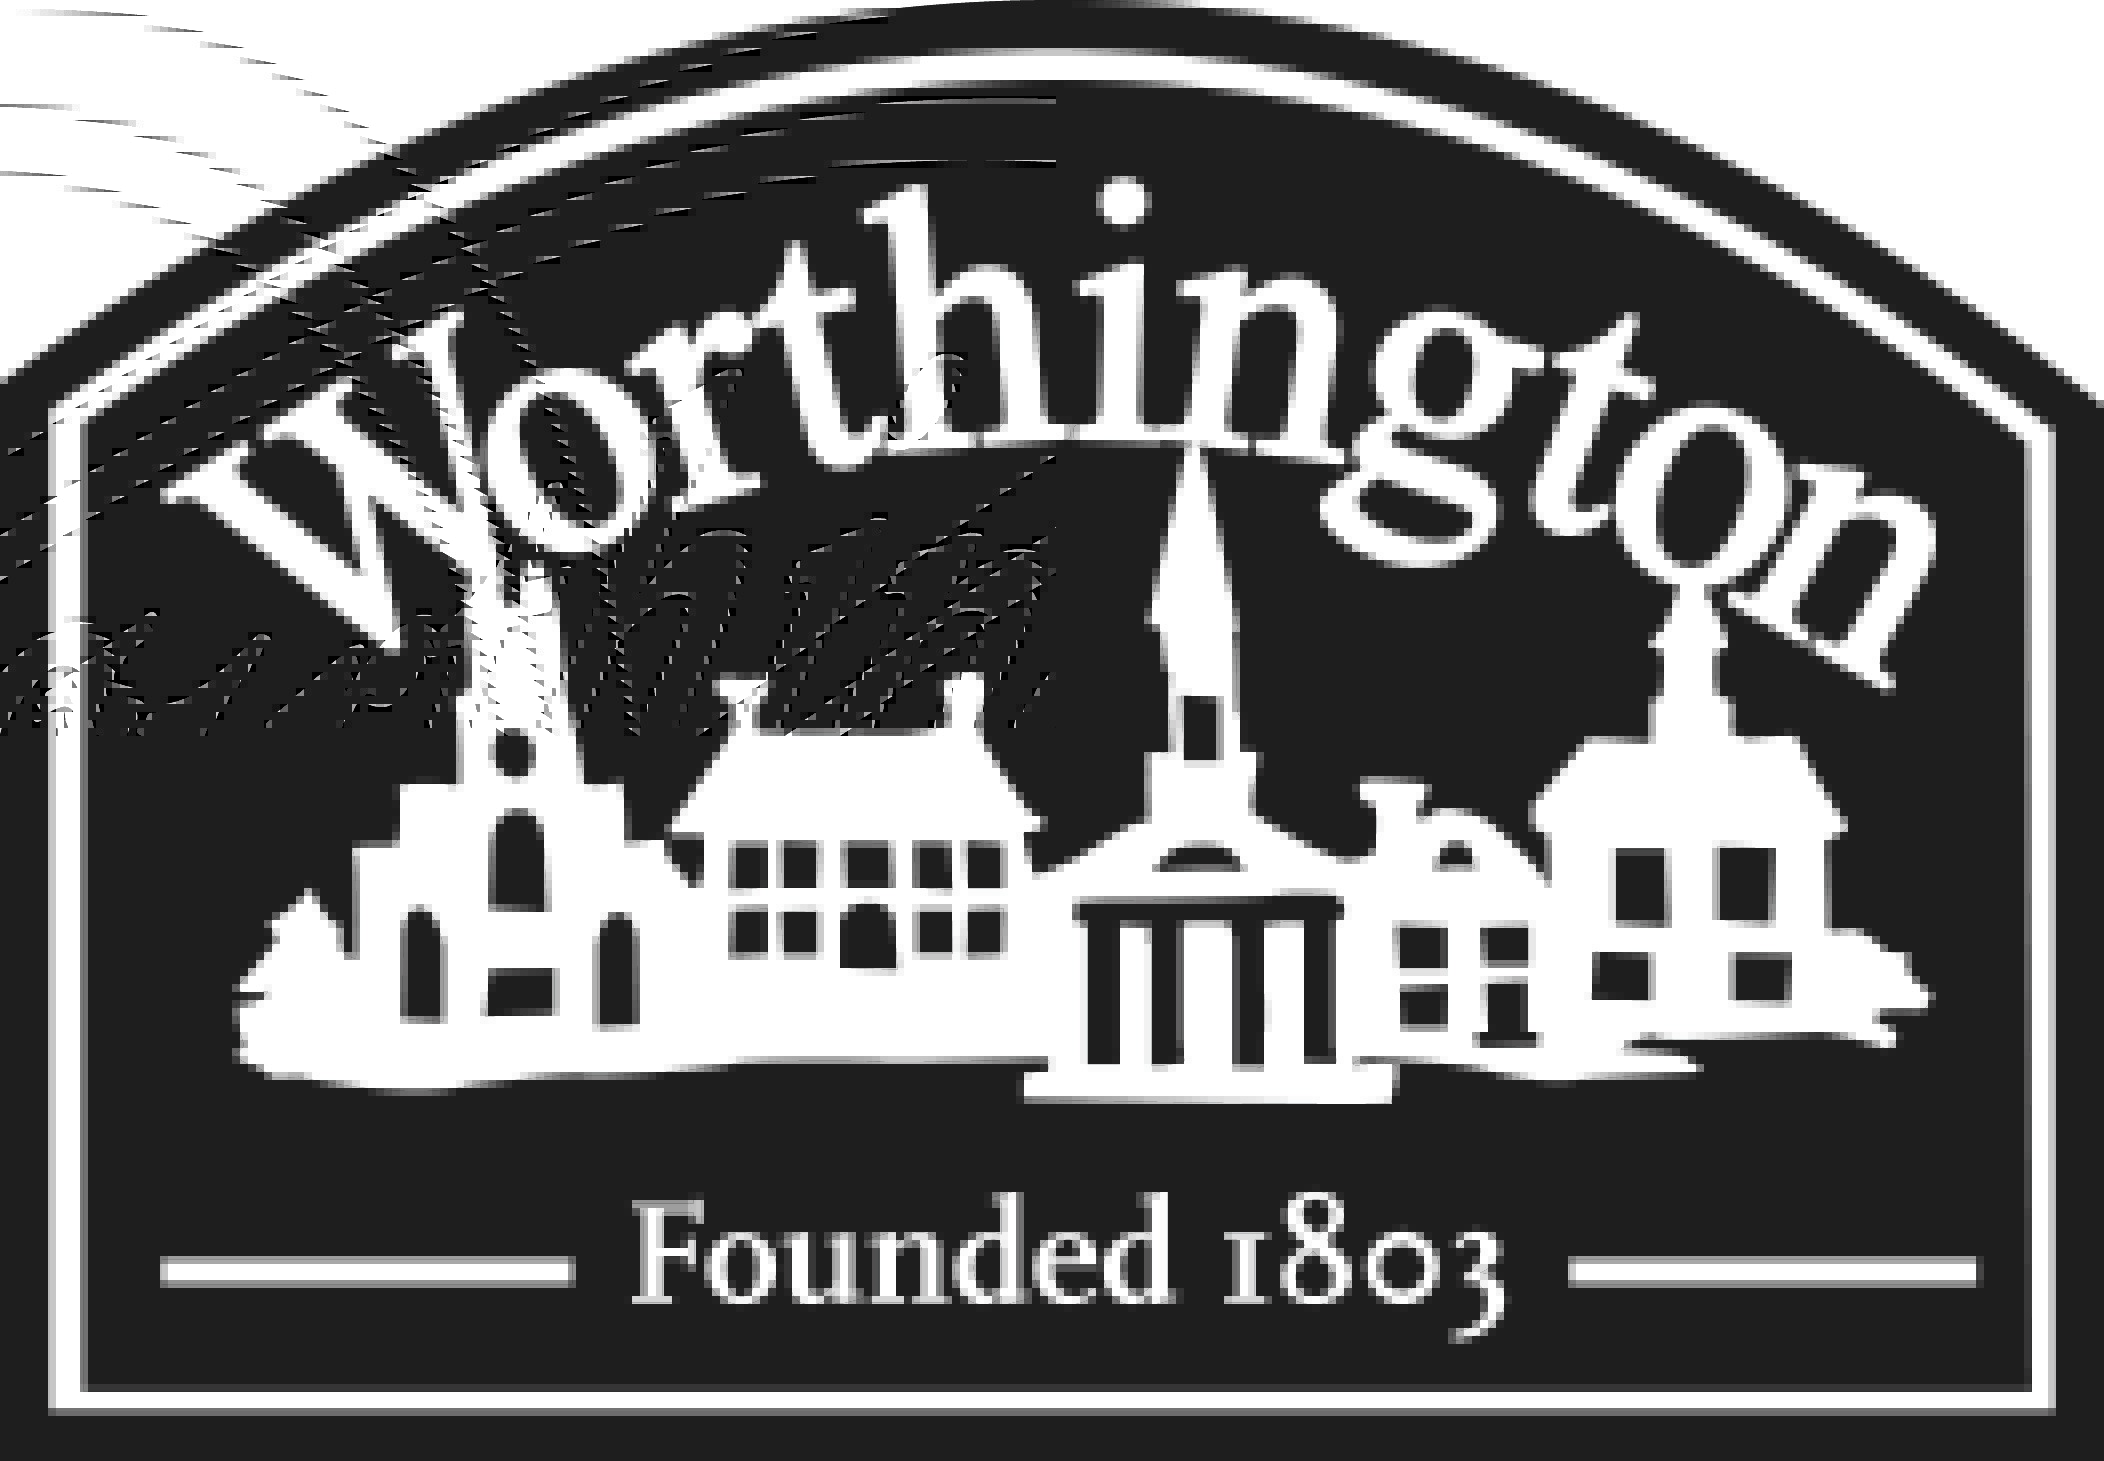 City of Worthington